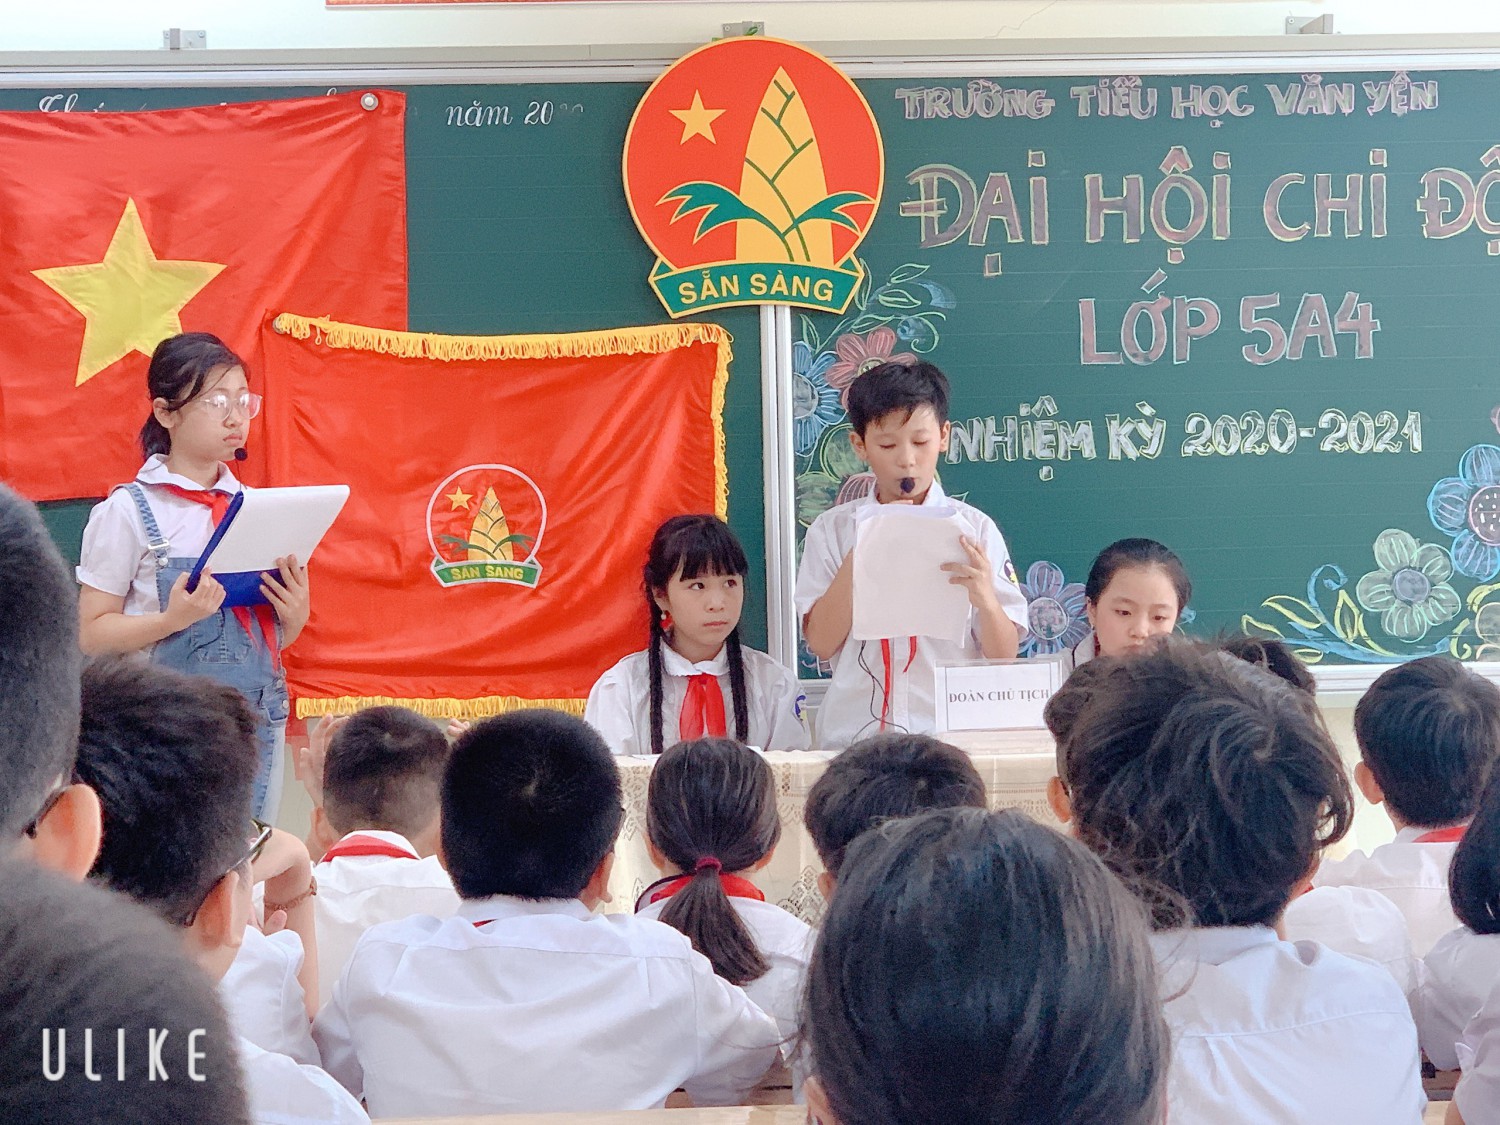 Đại hội chi đội mẫu tại Liên đội tiểu học Văn Yên.